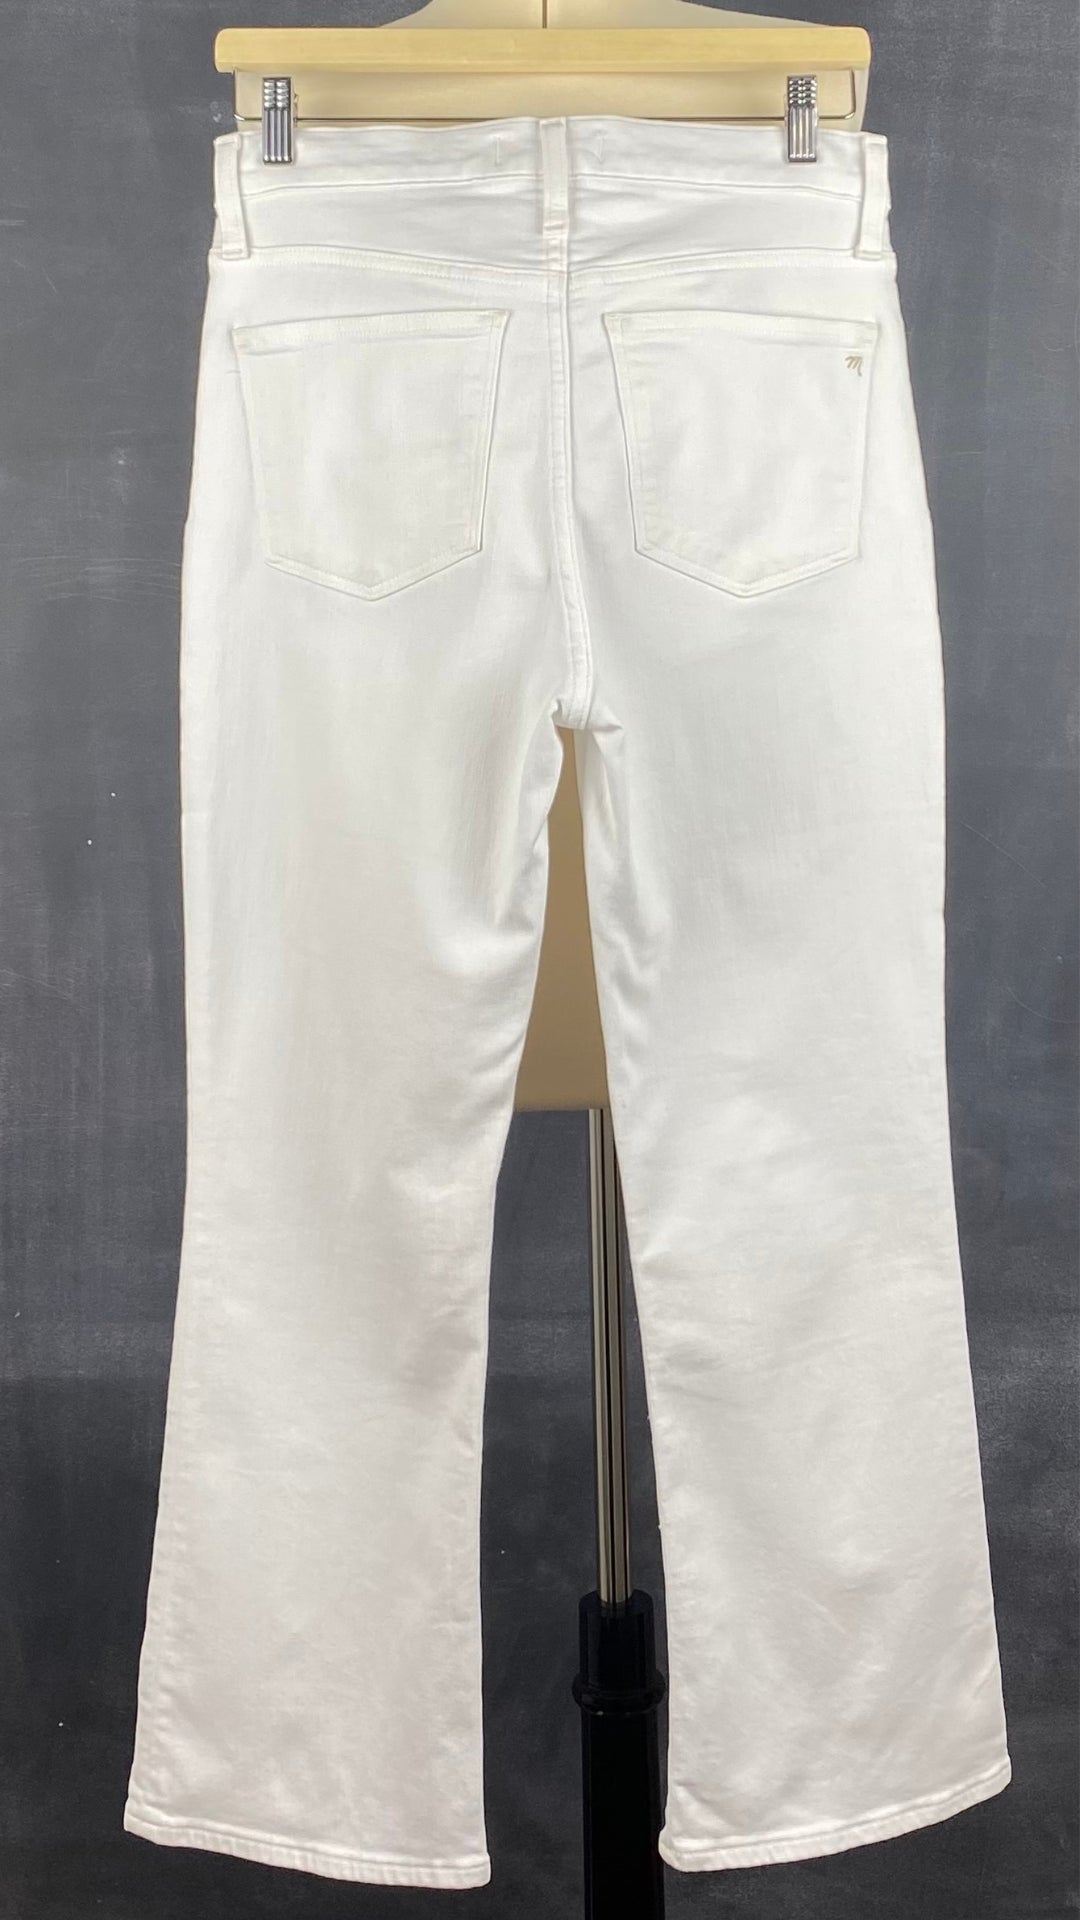 Pantalon blanc légèrement évasé Madewell, taille 28. Vue de dos.